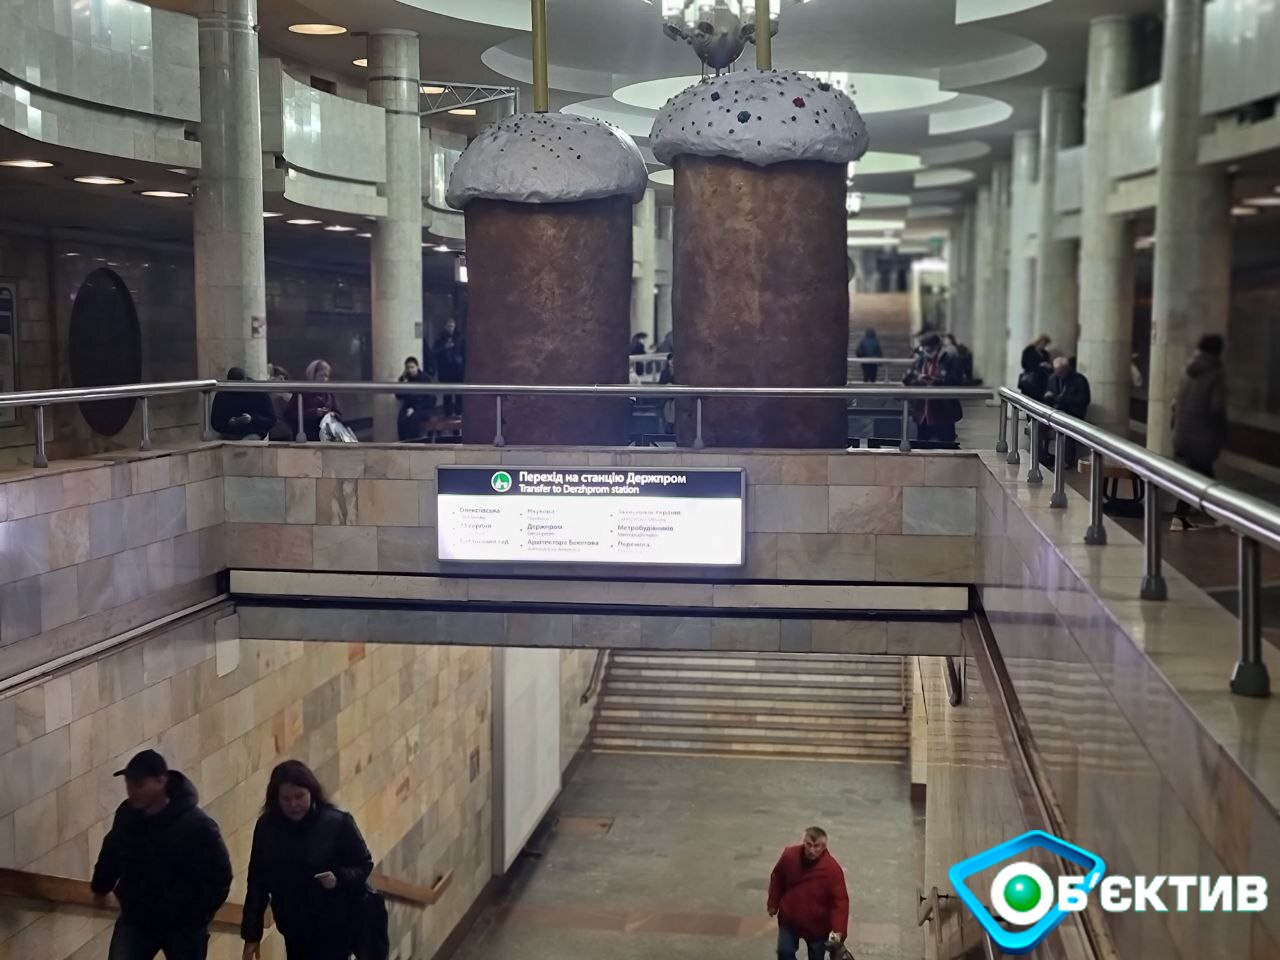 Куличи в метро Харькова перед Пасхой